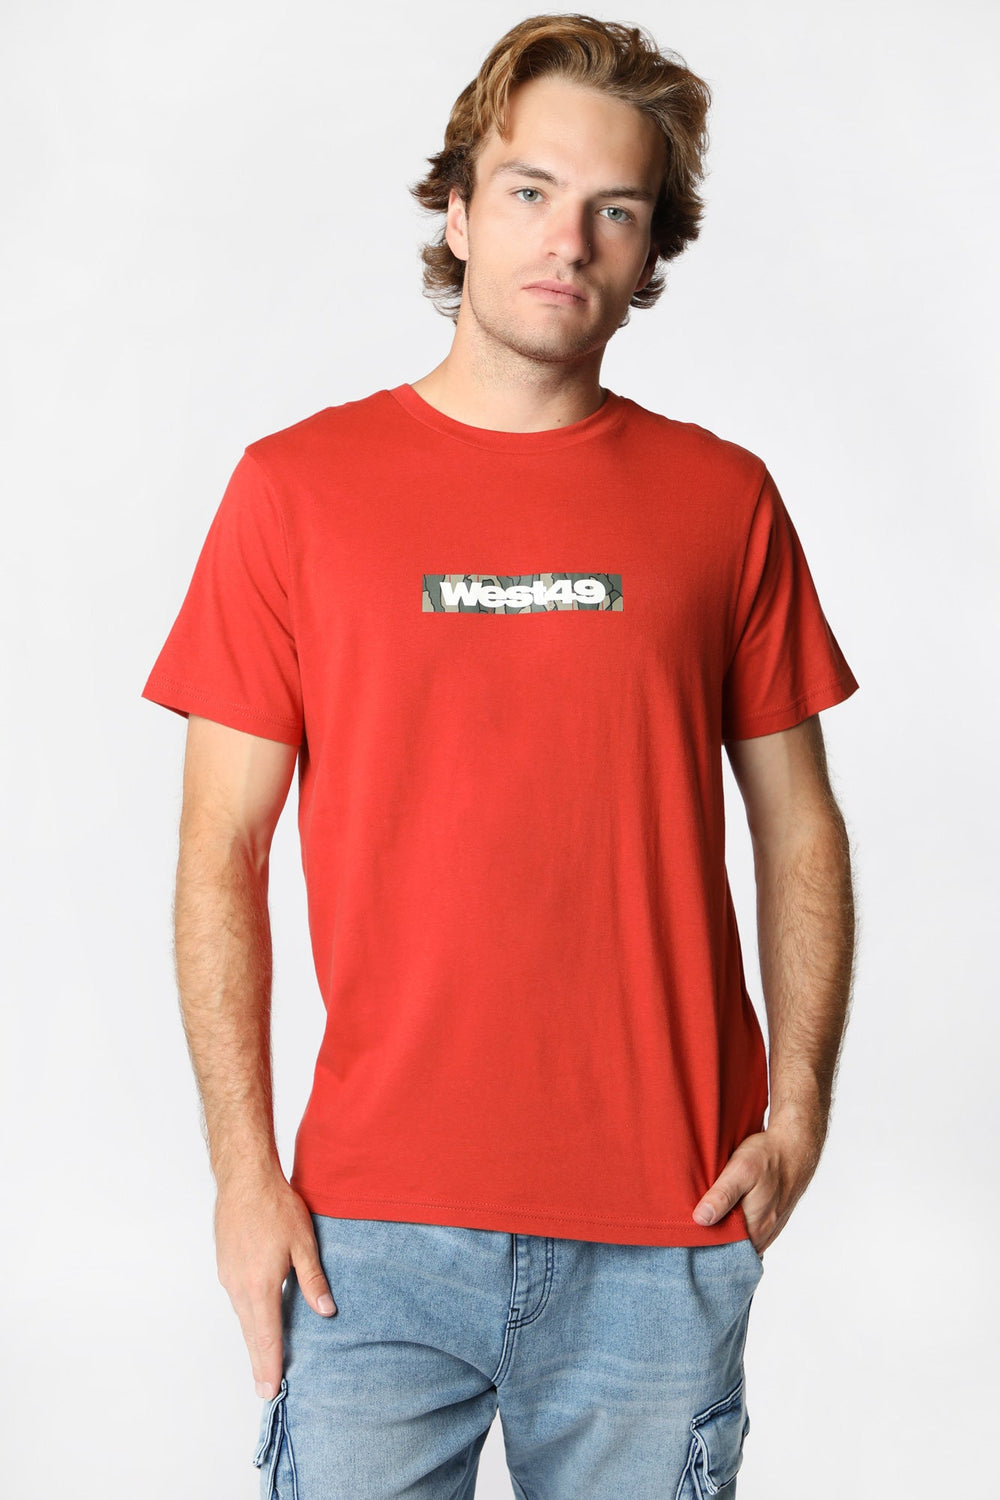 West49 Mens Mountain Camo T-Shirt West49 Mens Mountain Camo T-Shirt